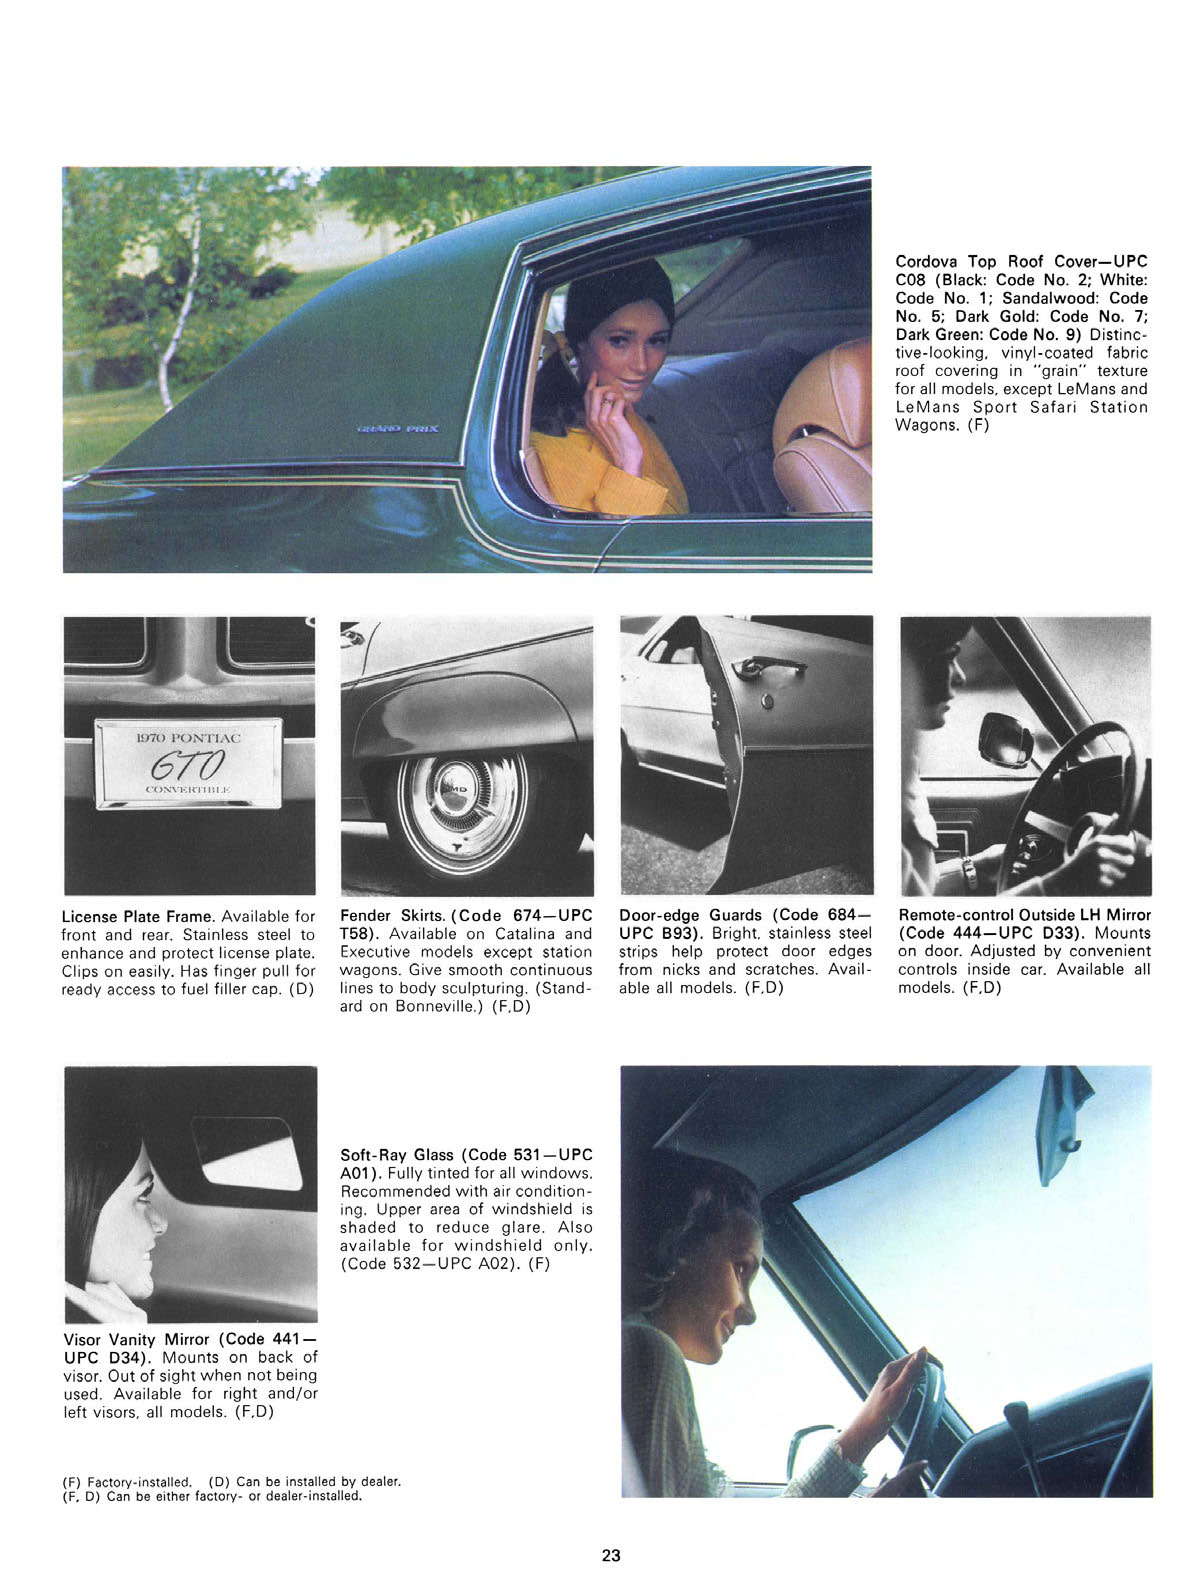 n_1970 Pontiac Accessories-23.jpg